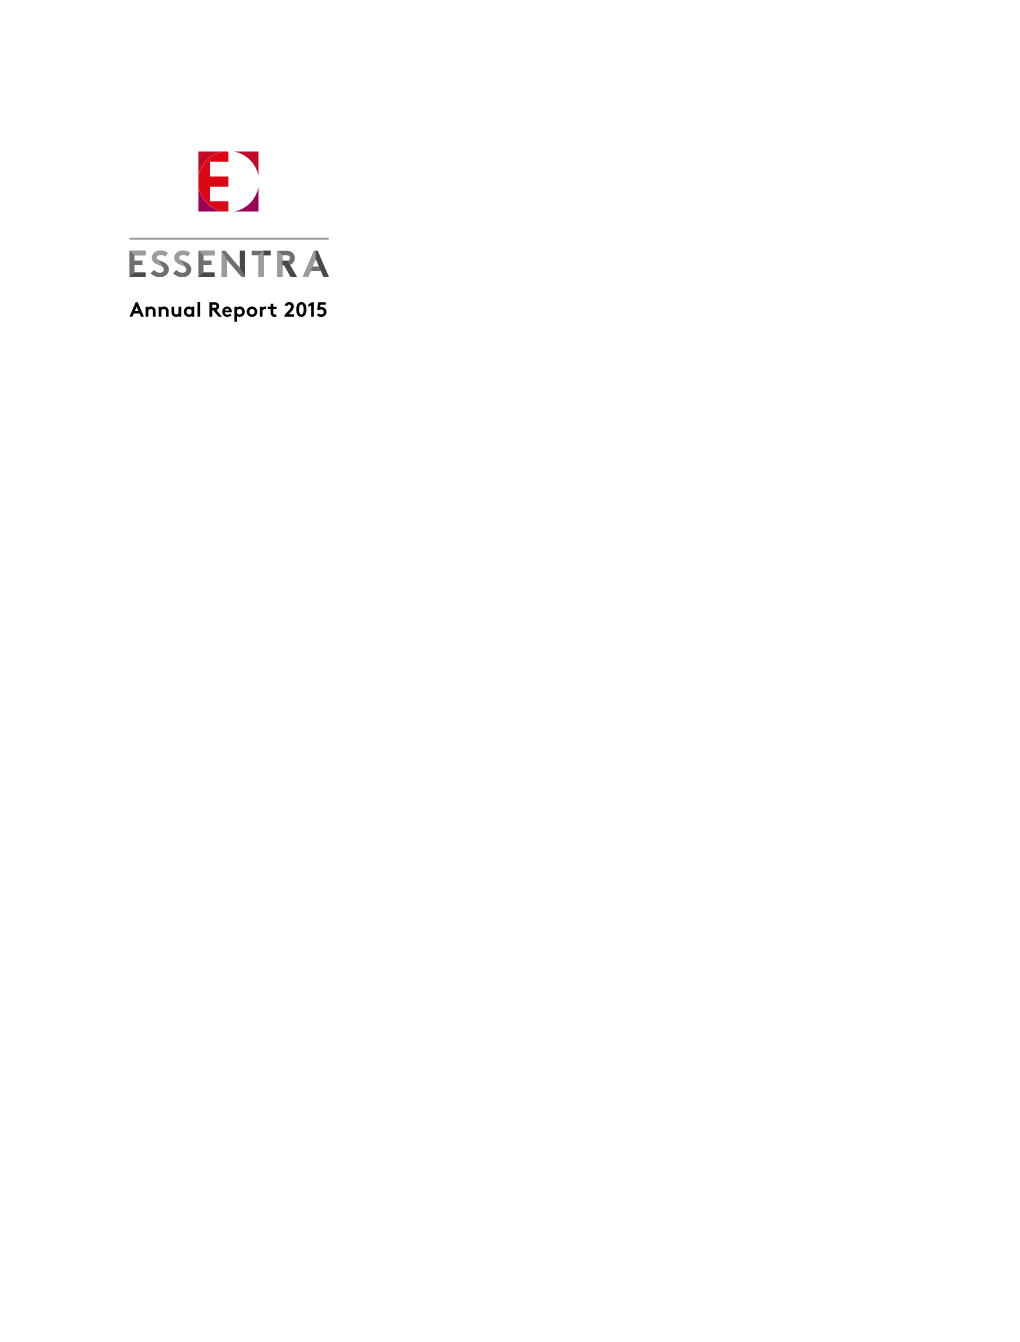 Annual Report 2015 ESSENTRA ANNUAL REPORT 2015